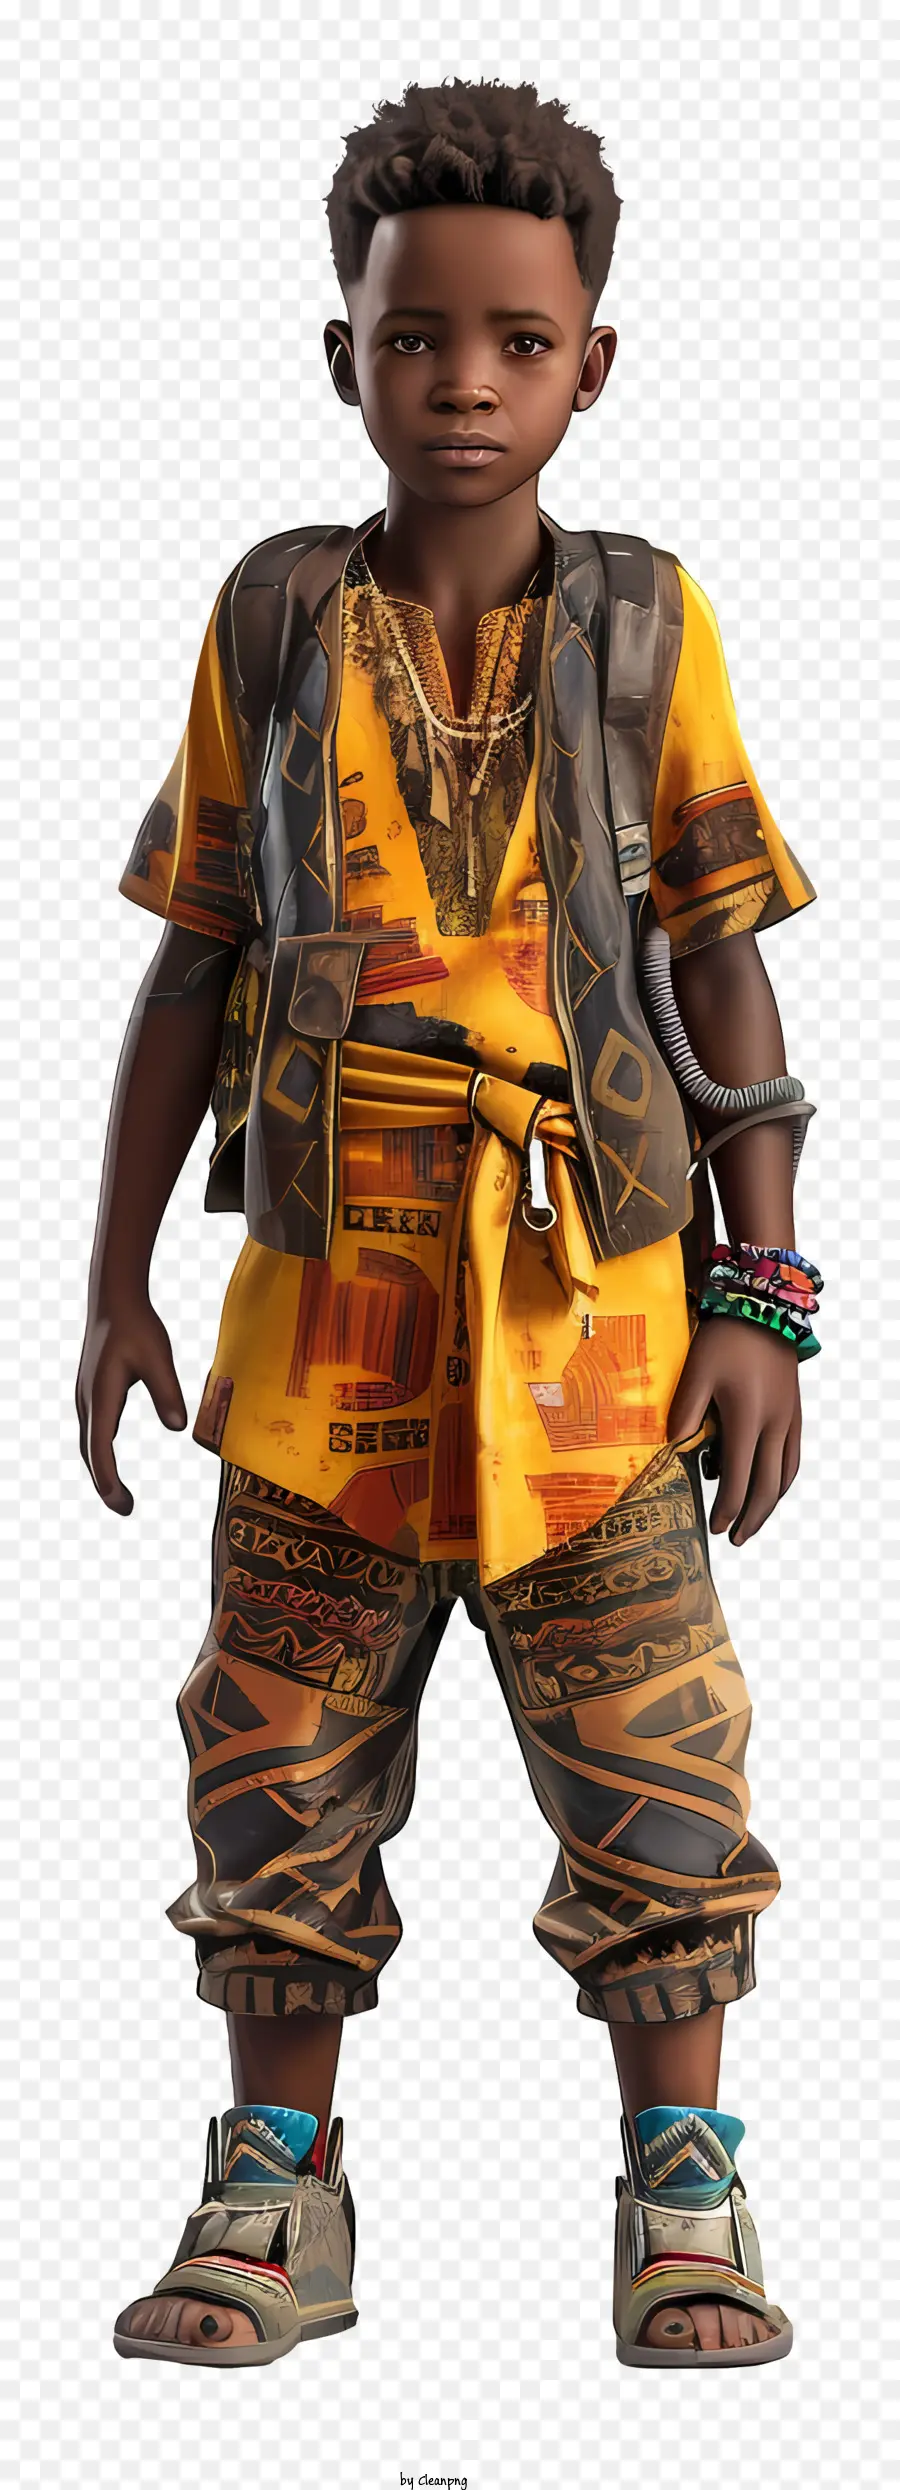 Afrikanischer Junge afrikanische Mode leuchtende gelbe Kleidung Afrika inspiriertes Outfit Modefotografie - Person in hellen afrikanischen Kleidung posiert draußen